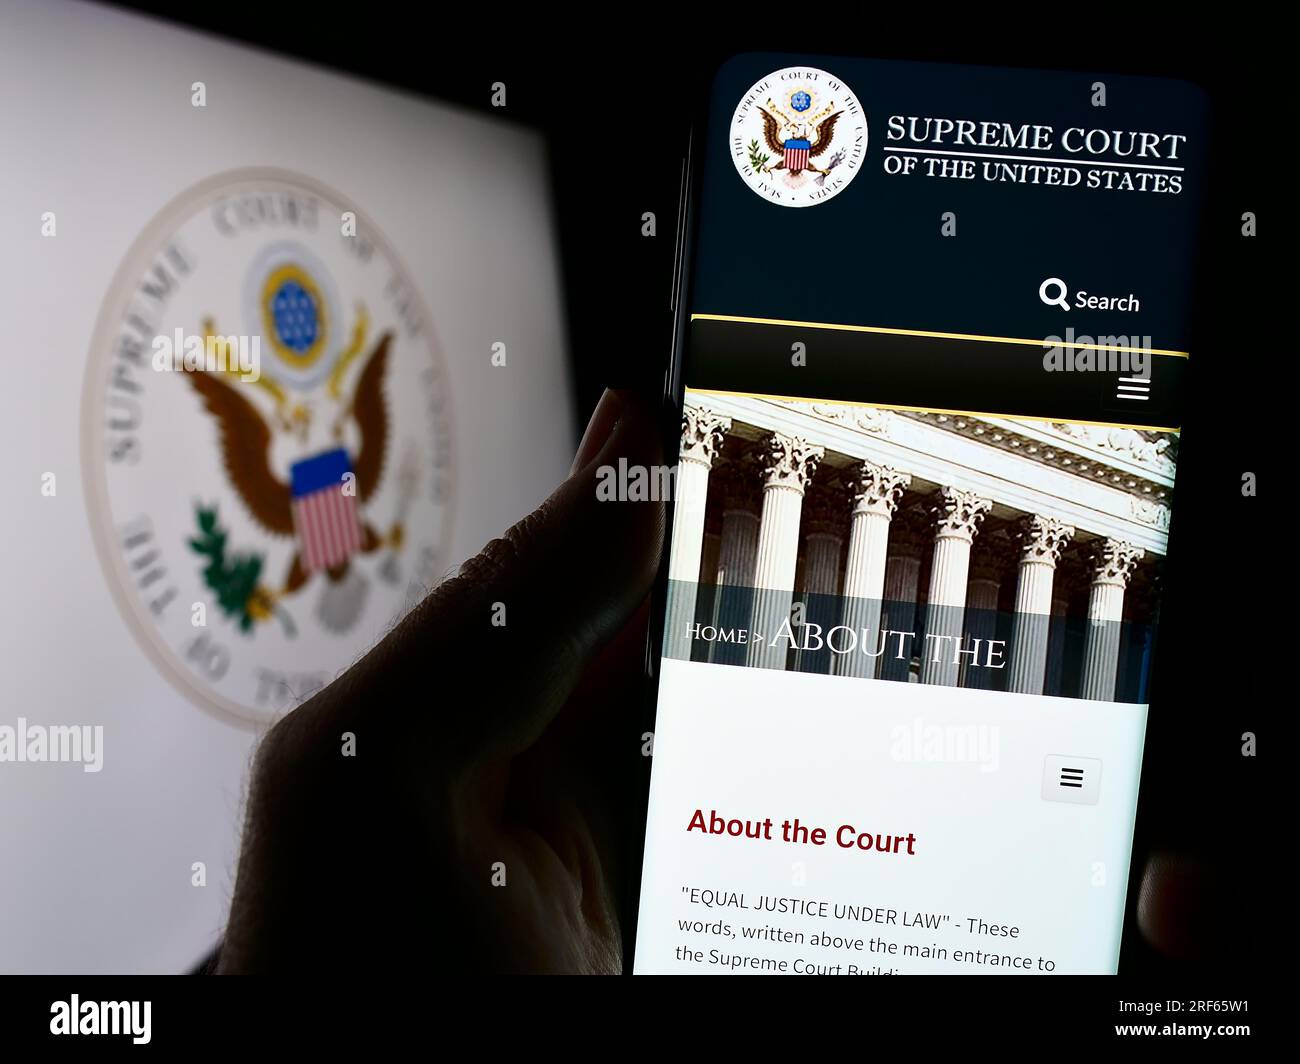 Personne détenant un téléphone portable avec le site Web des États-Unis Cour suprême (SCOTUS) sur l'écran devant le sceau. Concentrez-vous sur le centre de l'écran du téléphone. Banque D'Images